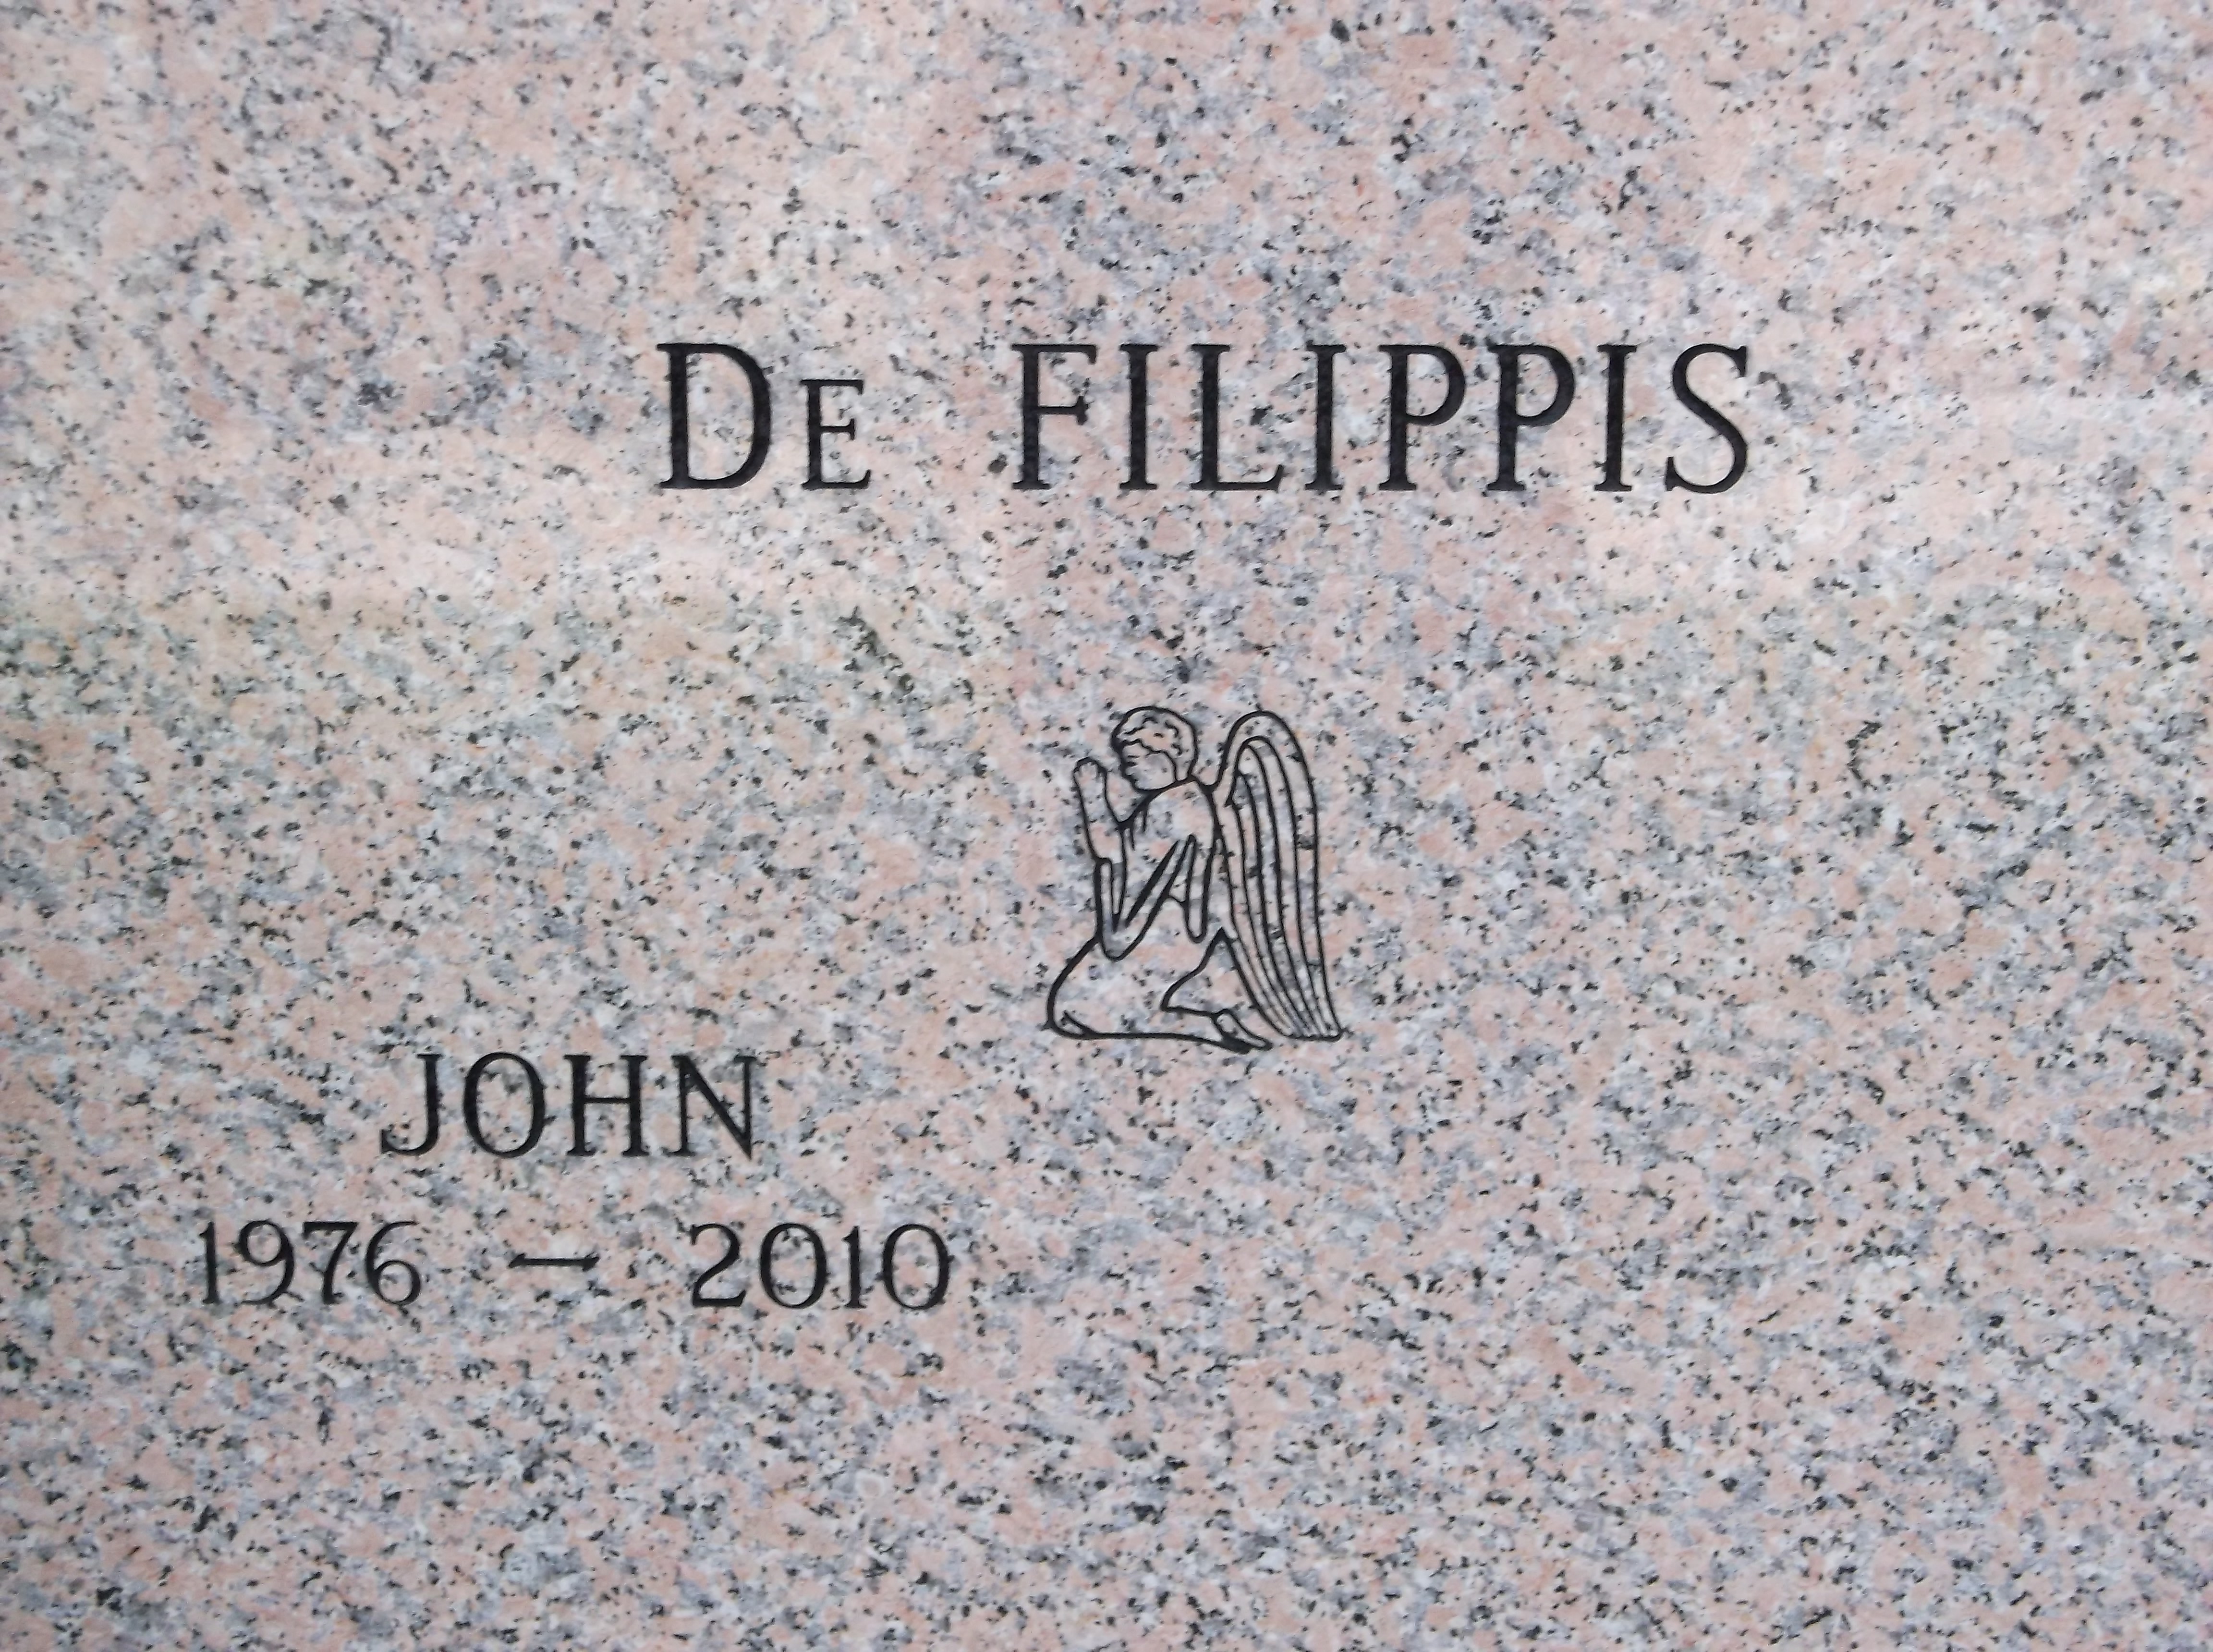 John De Filippis